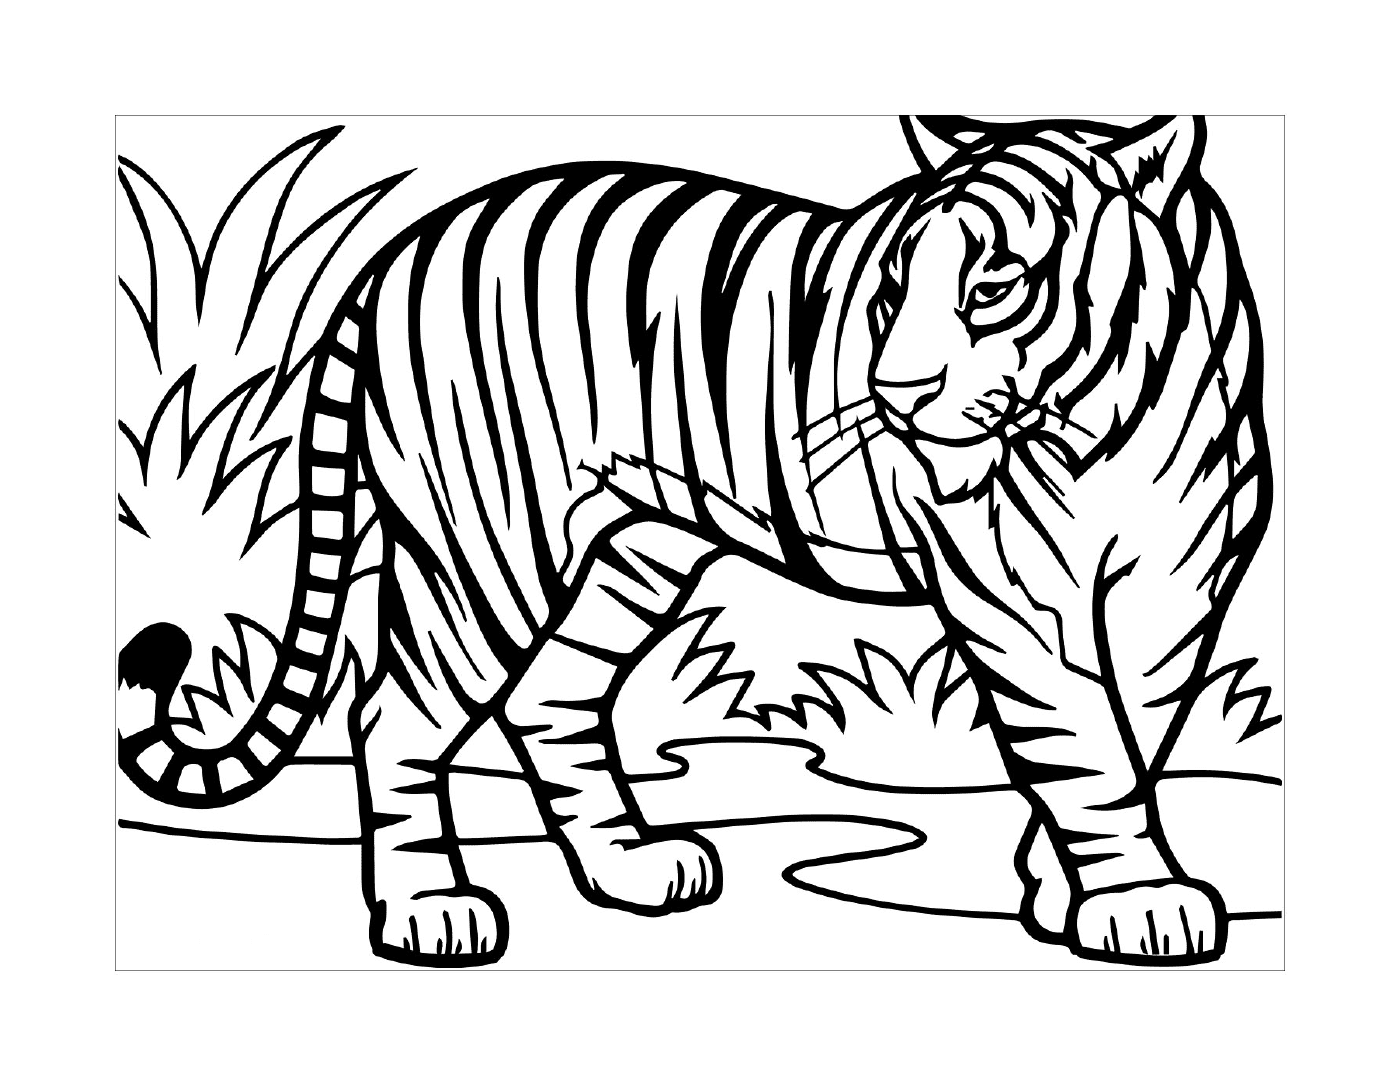  Ein wandelnder Tiger 